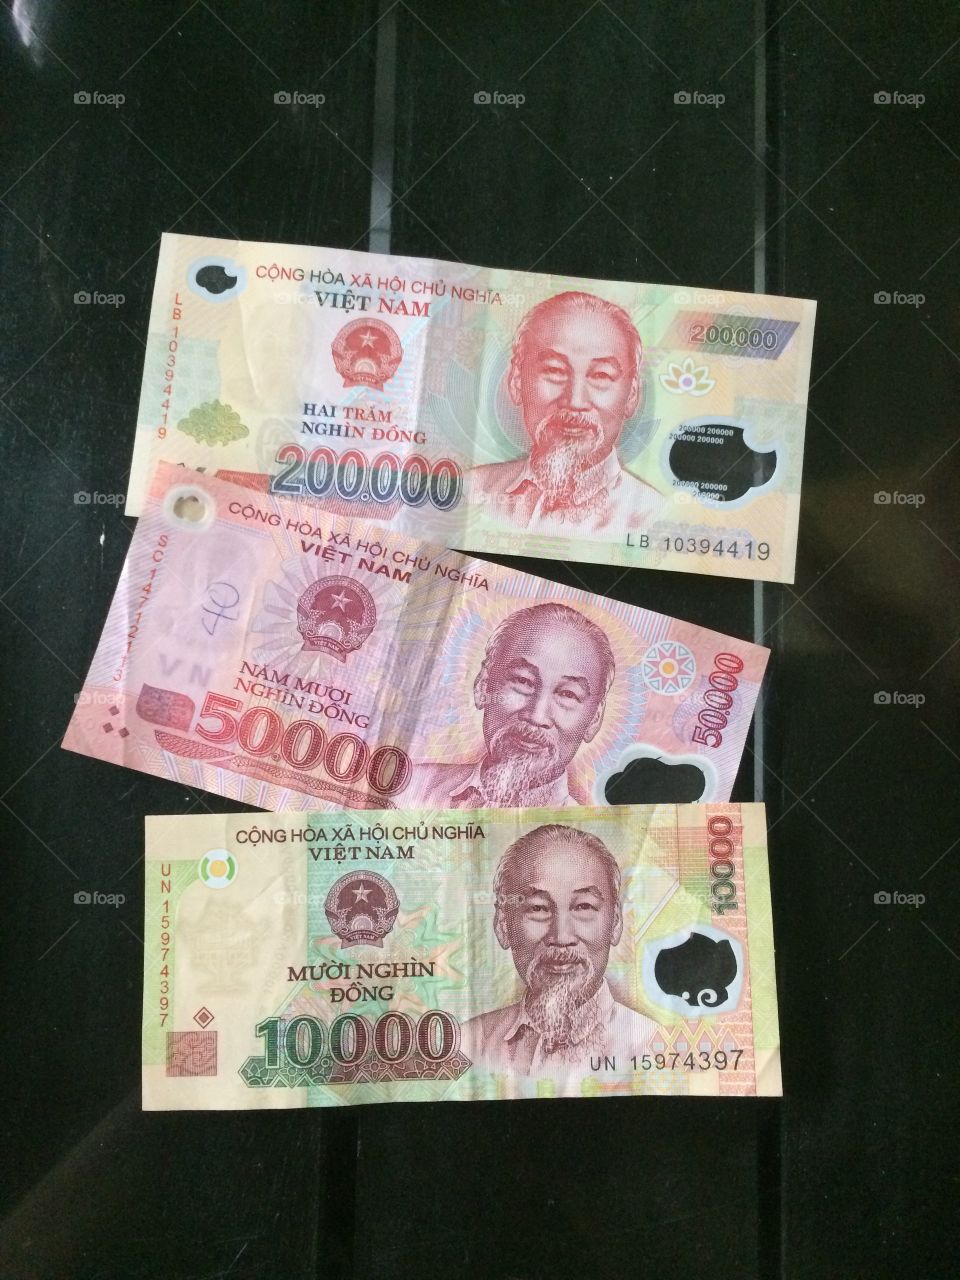 Vietnam currency
